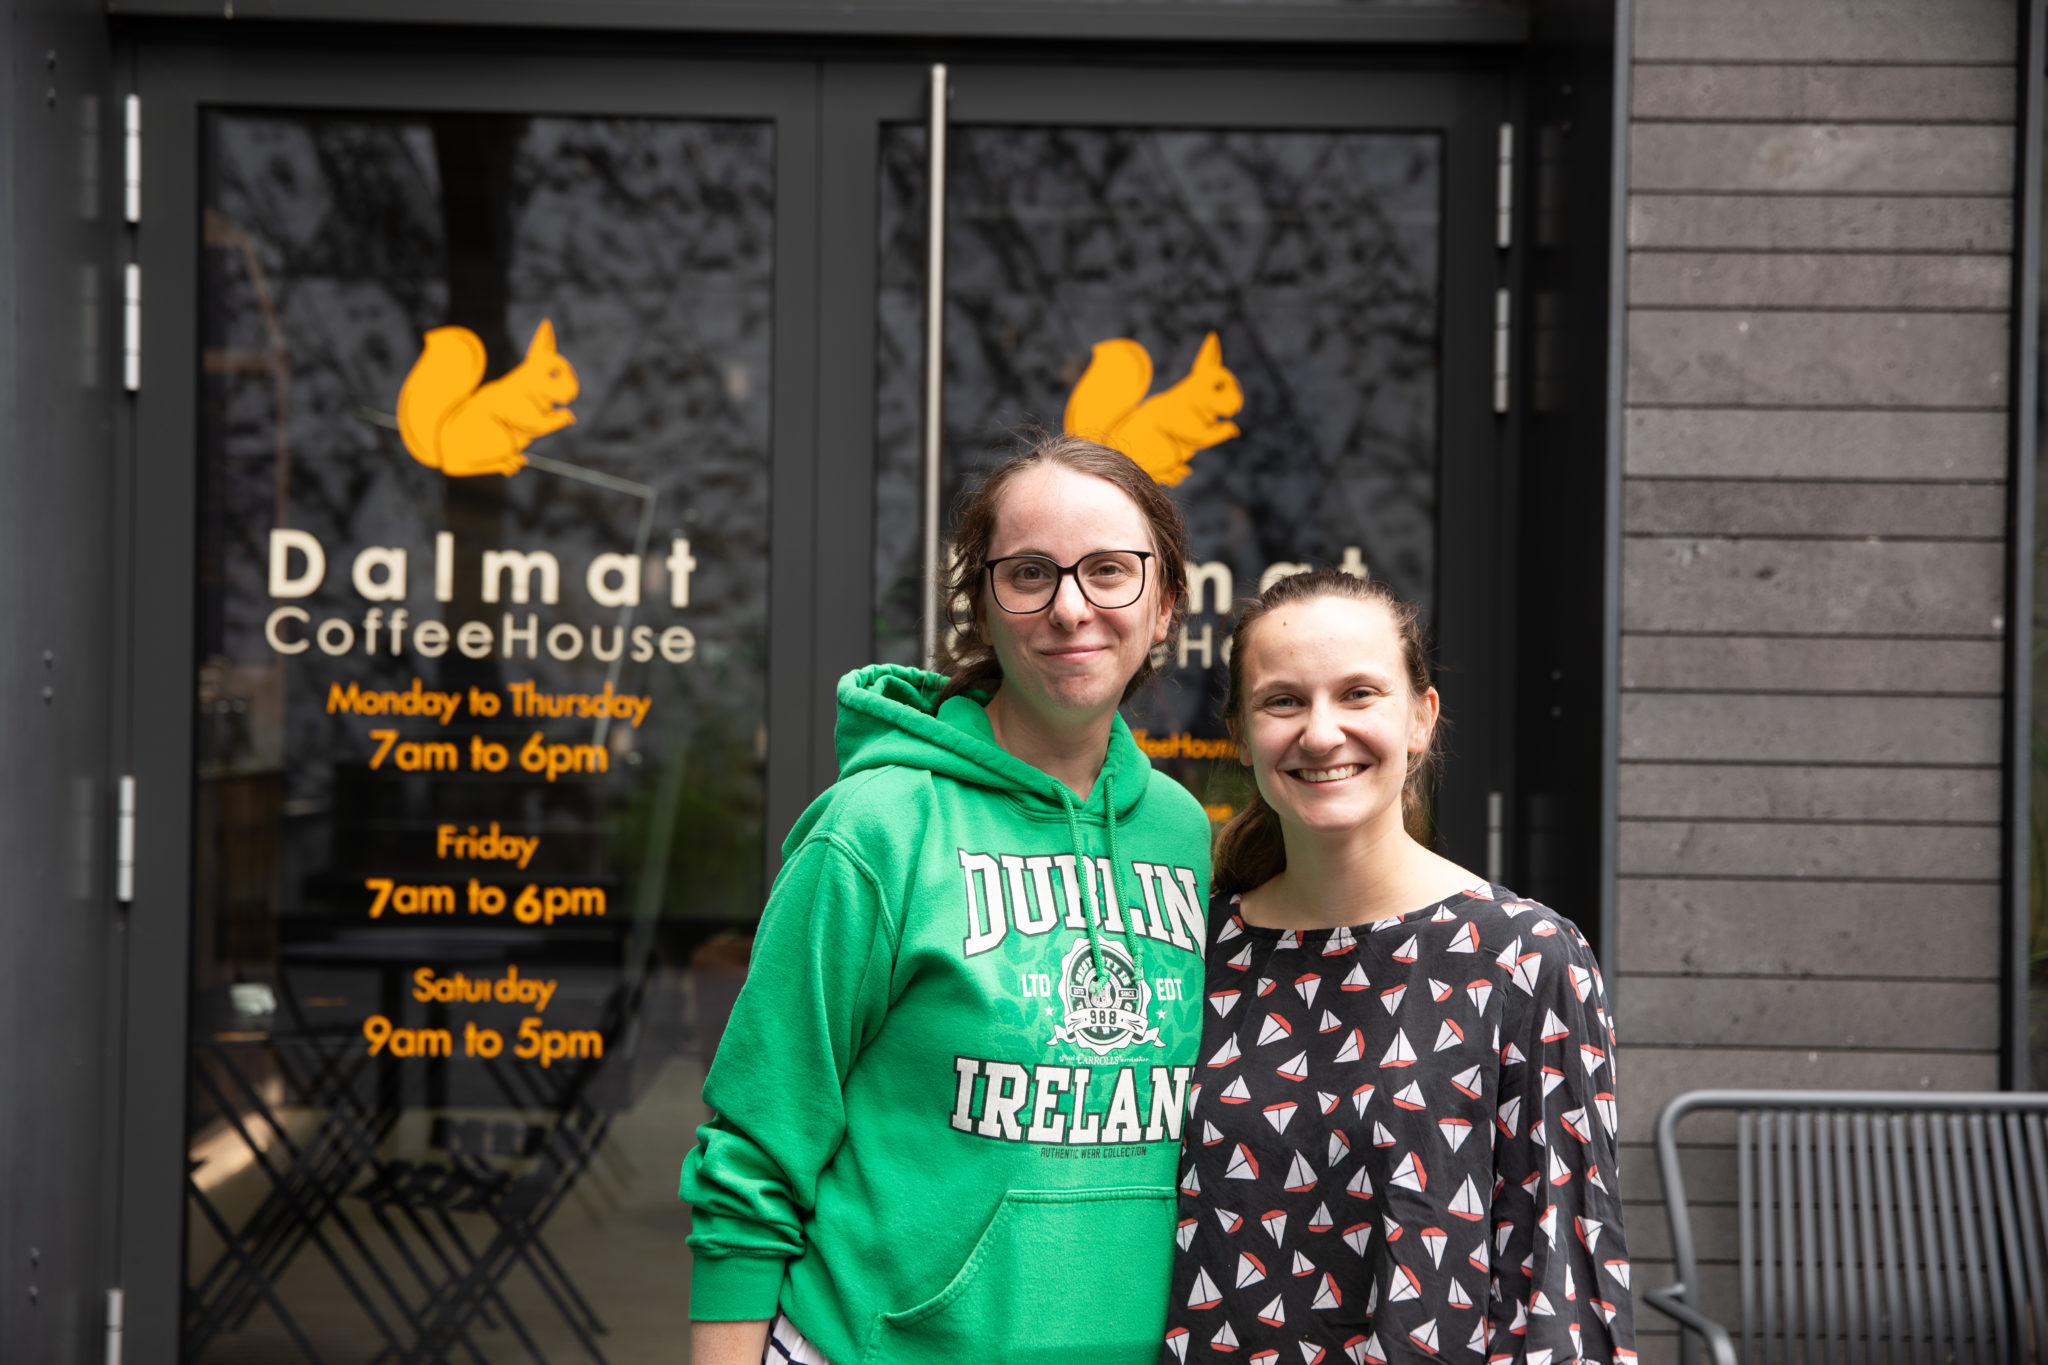 Dalmat Coffee House – Les délices caféinés du campus